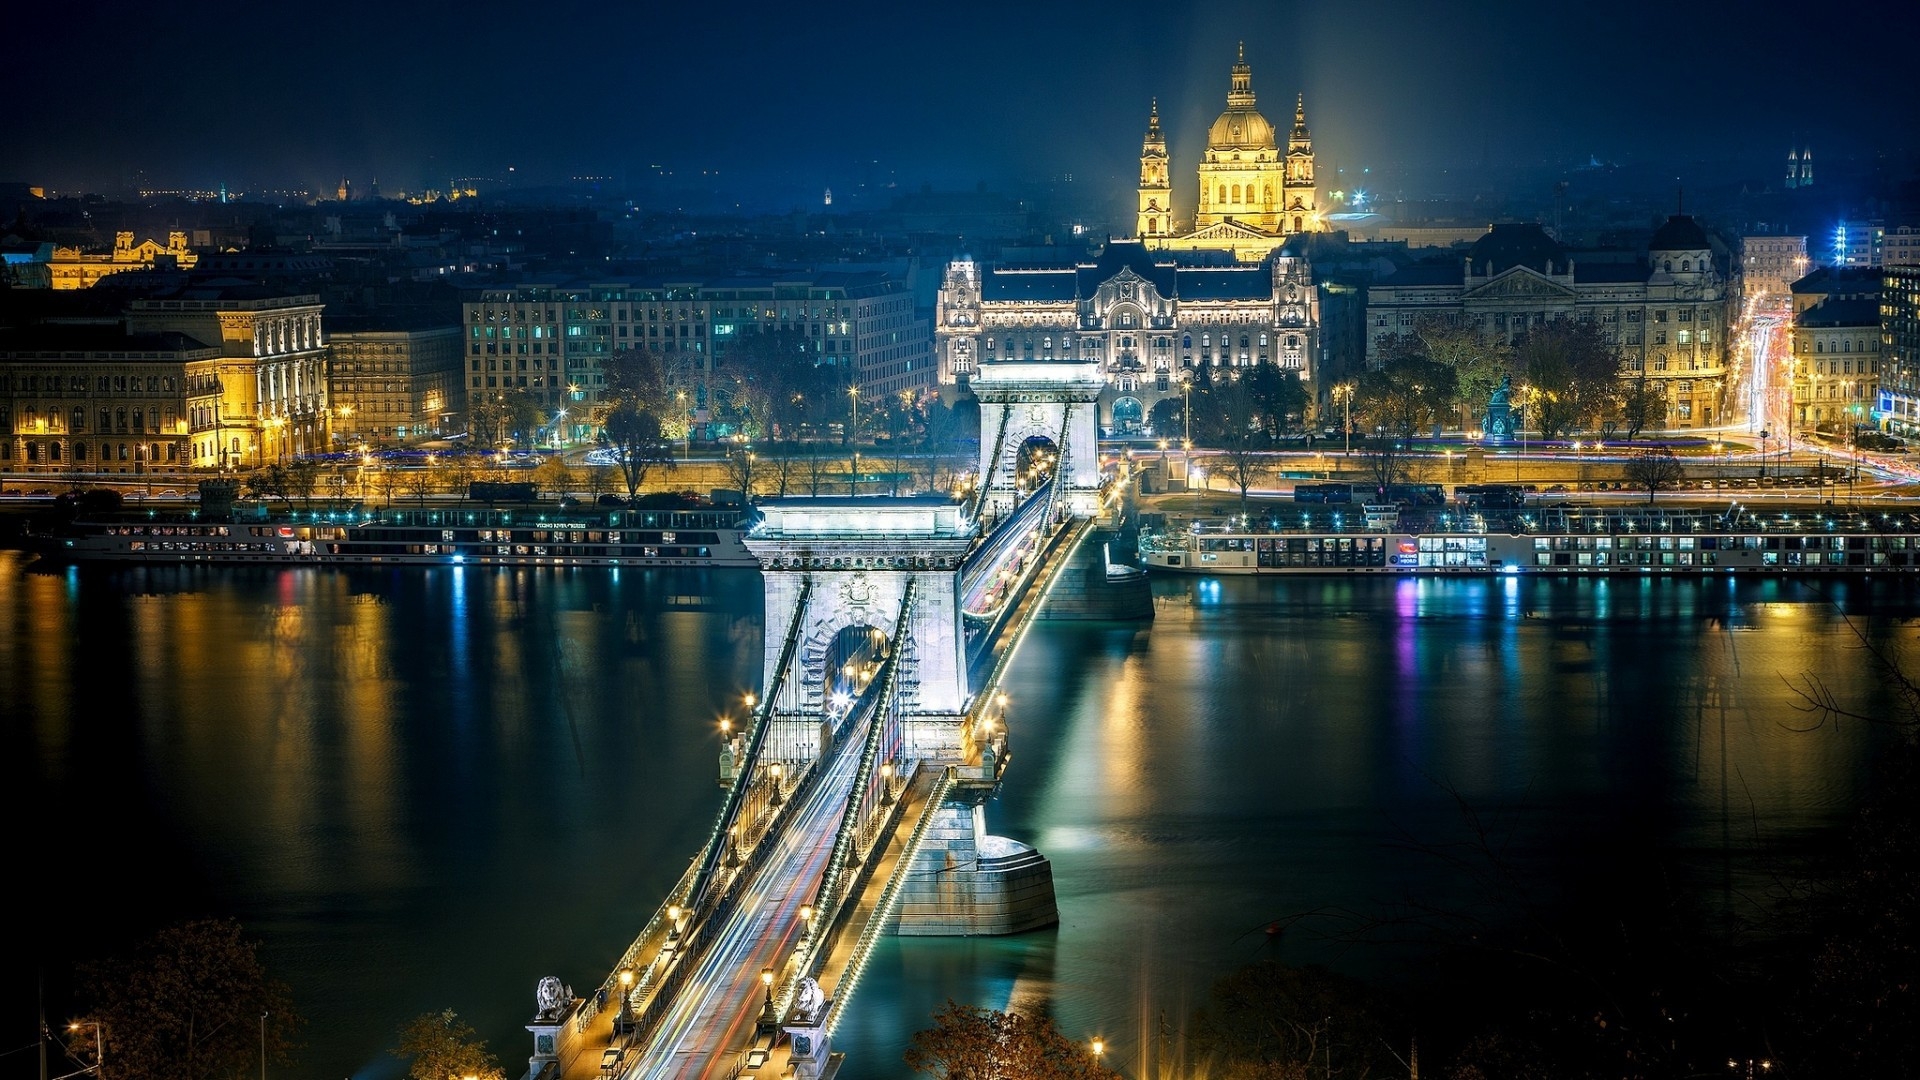 Szechenyi Chain Bridge Budapest for 1920 x 1080 HDTV 1080p resolution